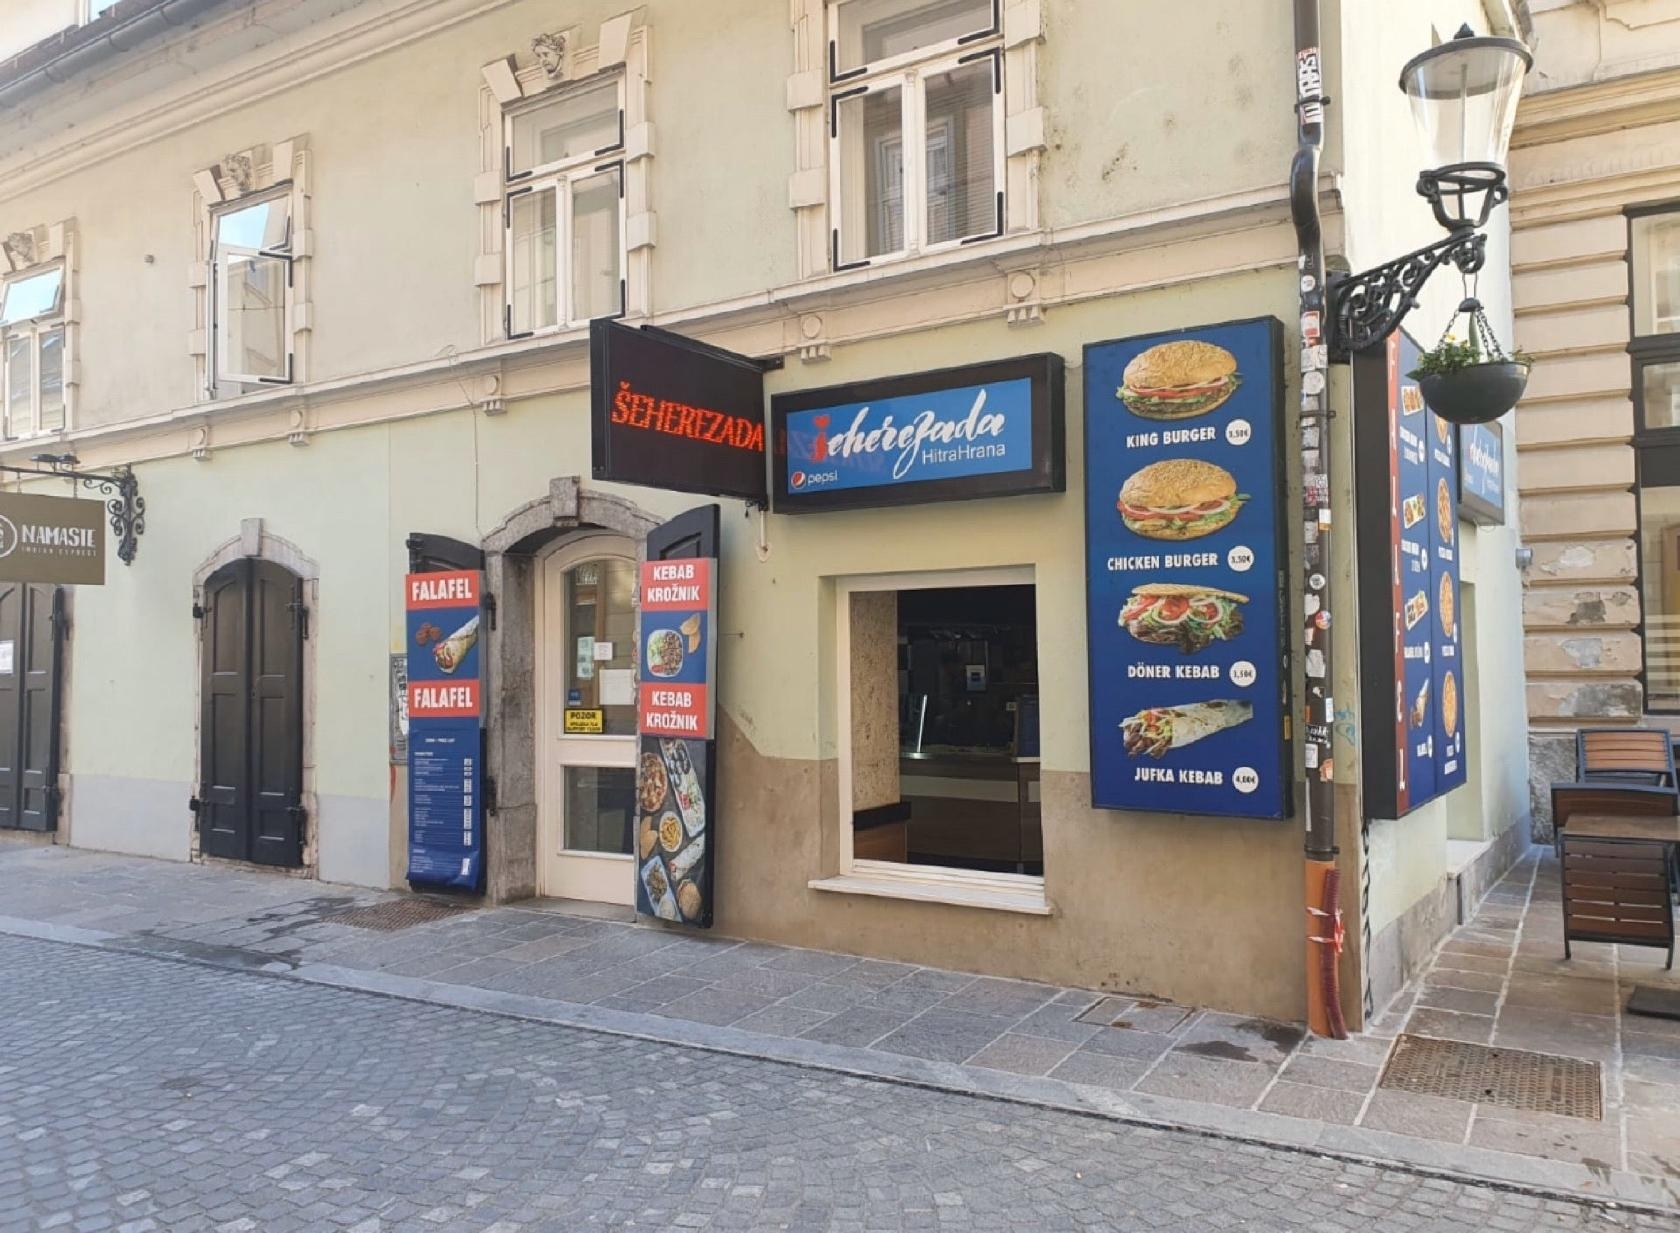 أفضل أماكن التسوق والمطاعم في ليوبليانا سلوفينيا مطعم شهر زاد 